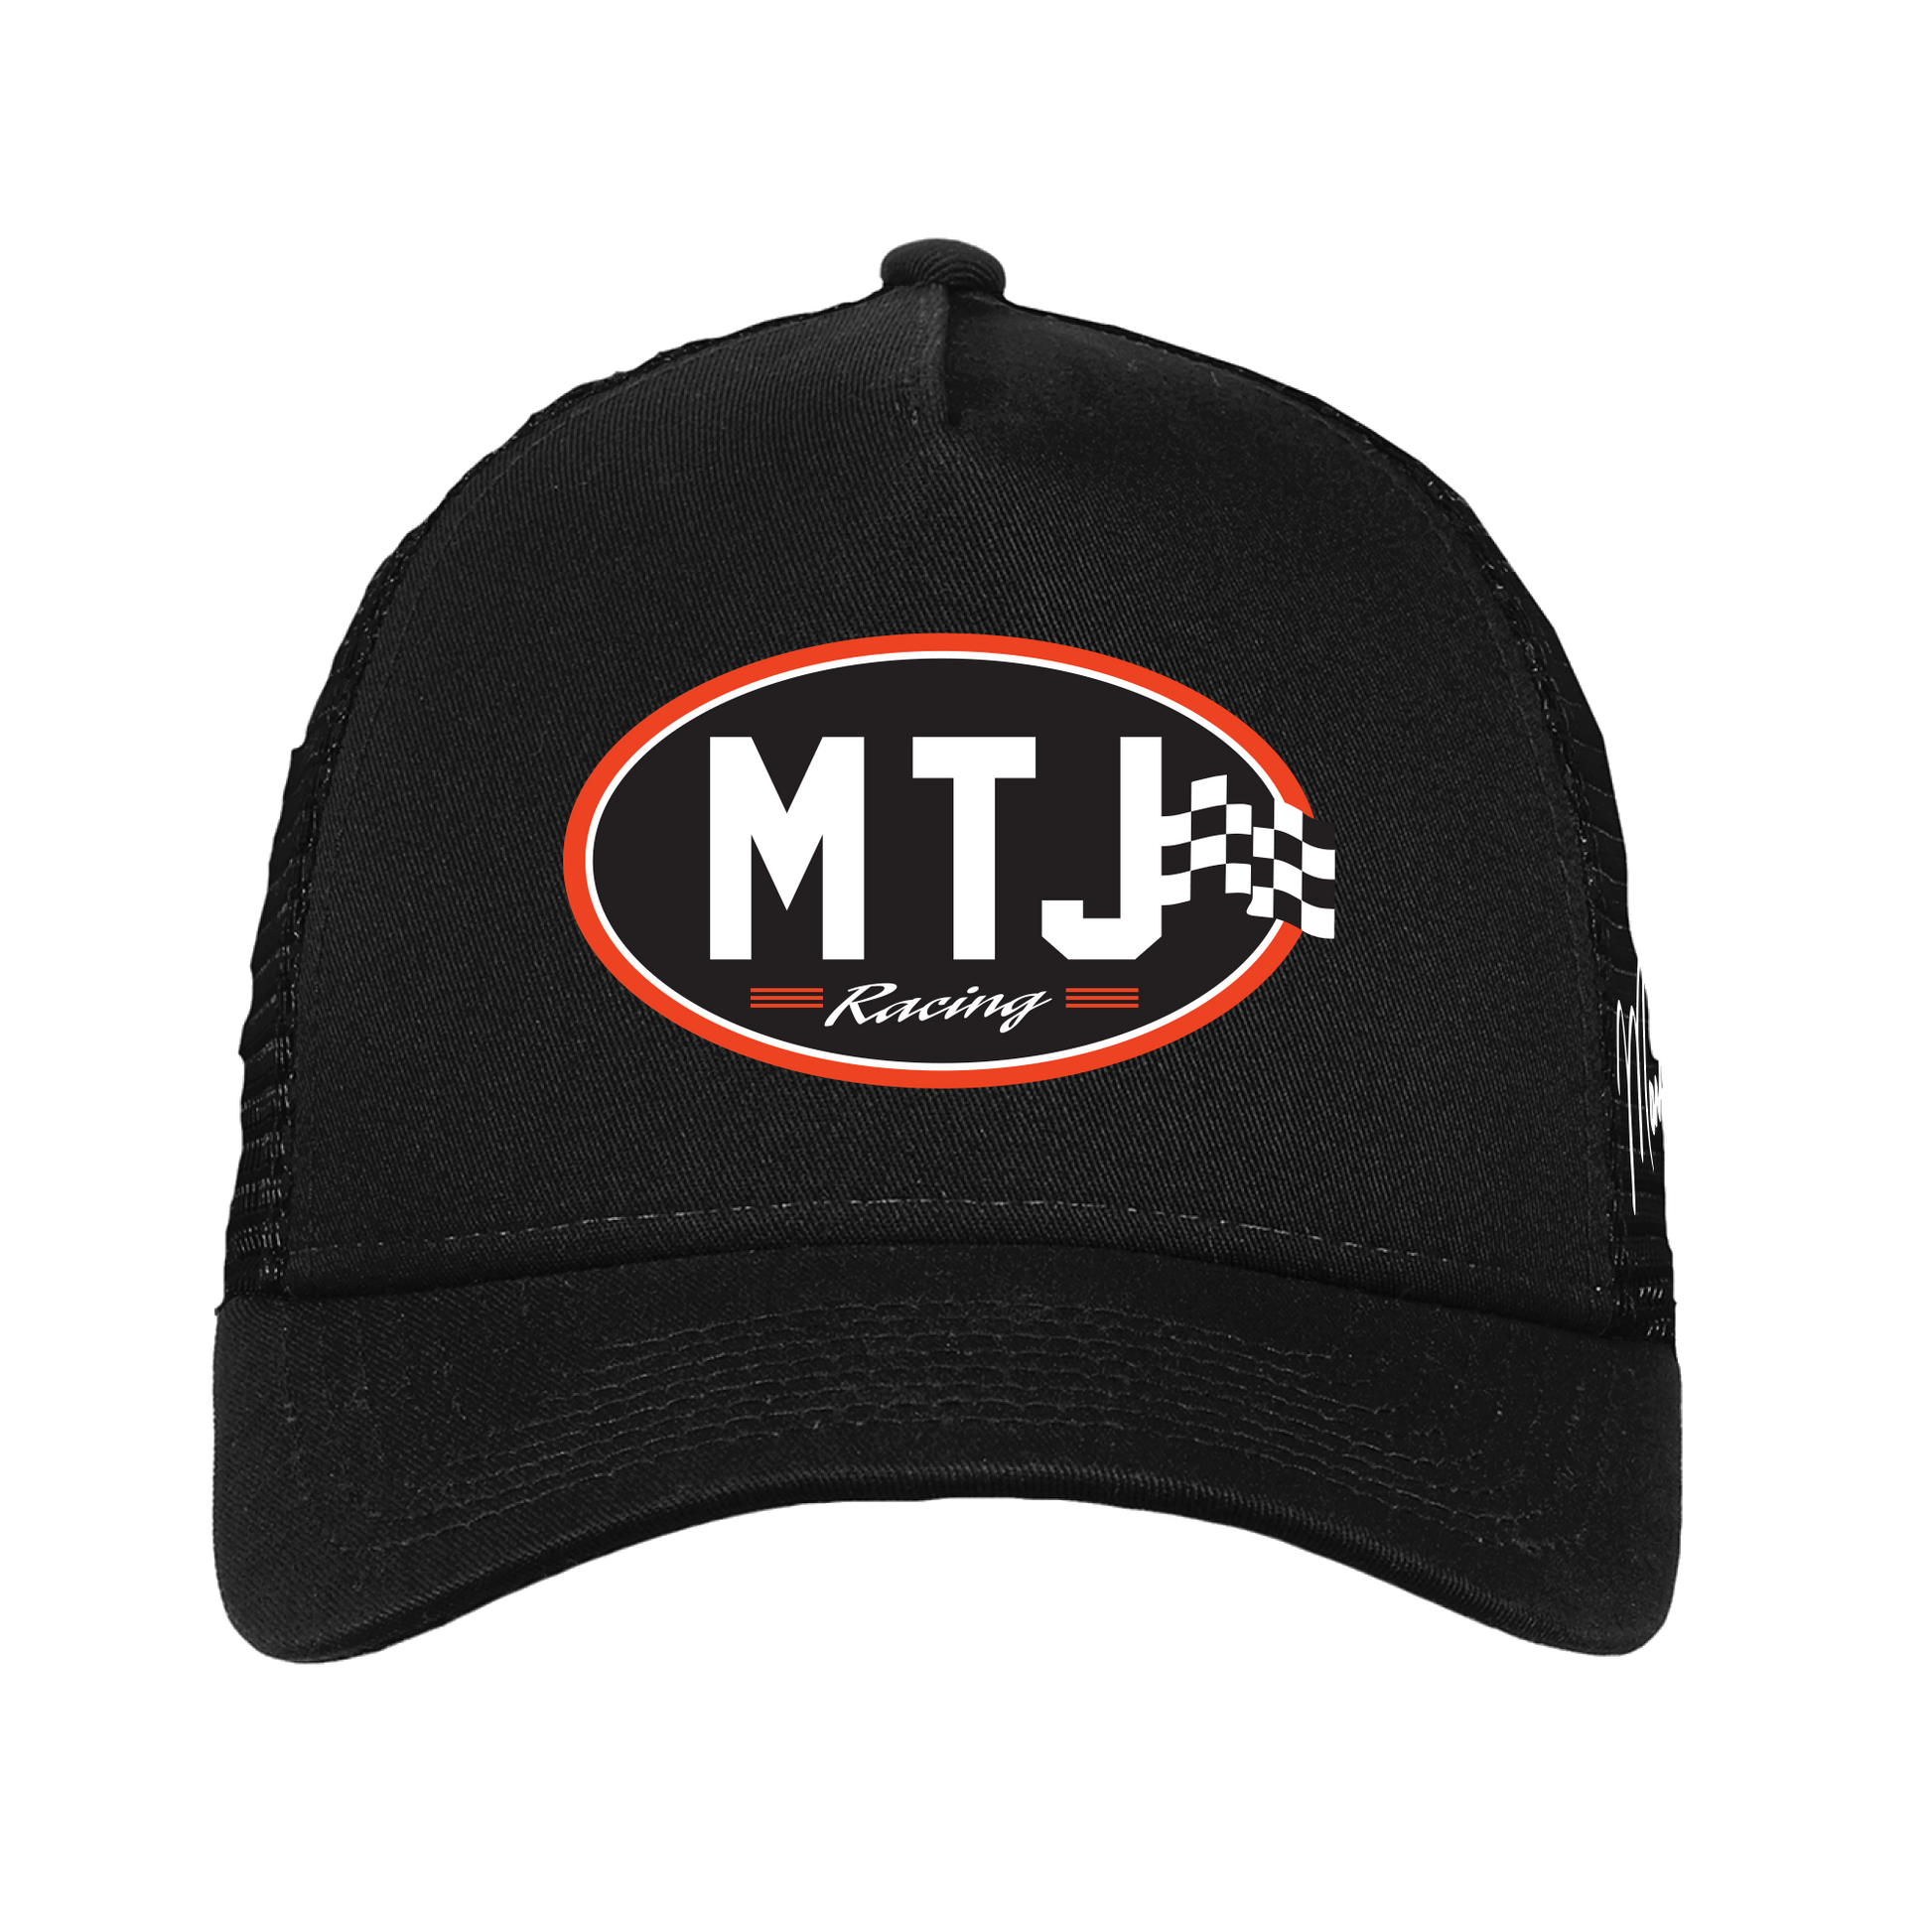 MTJ Racing Trucker Hat - Martin Truex Jr. Retail Store